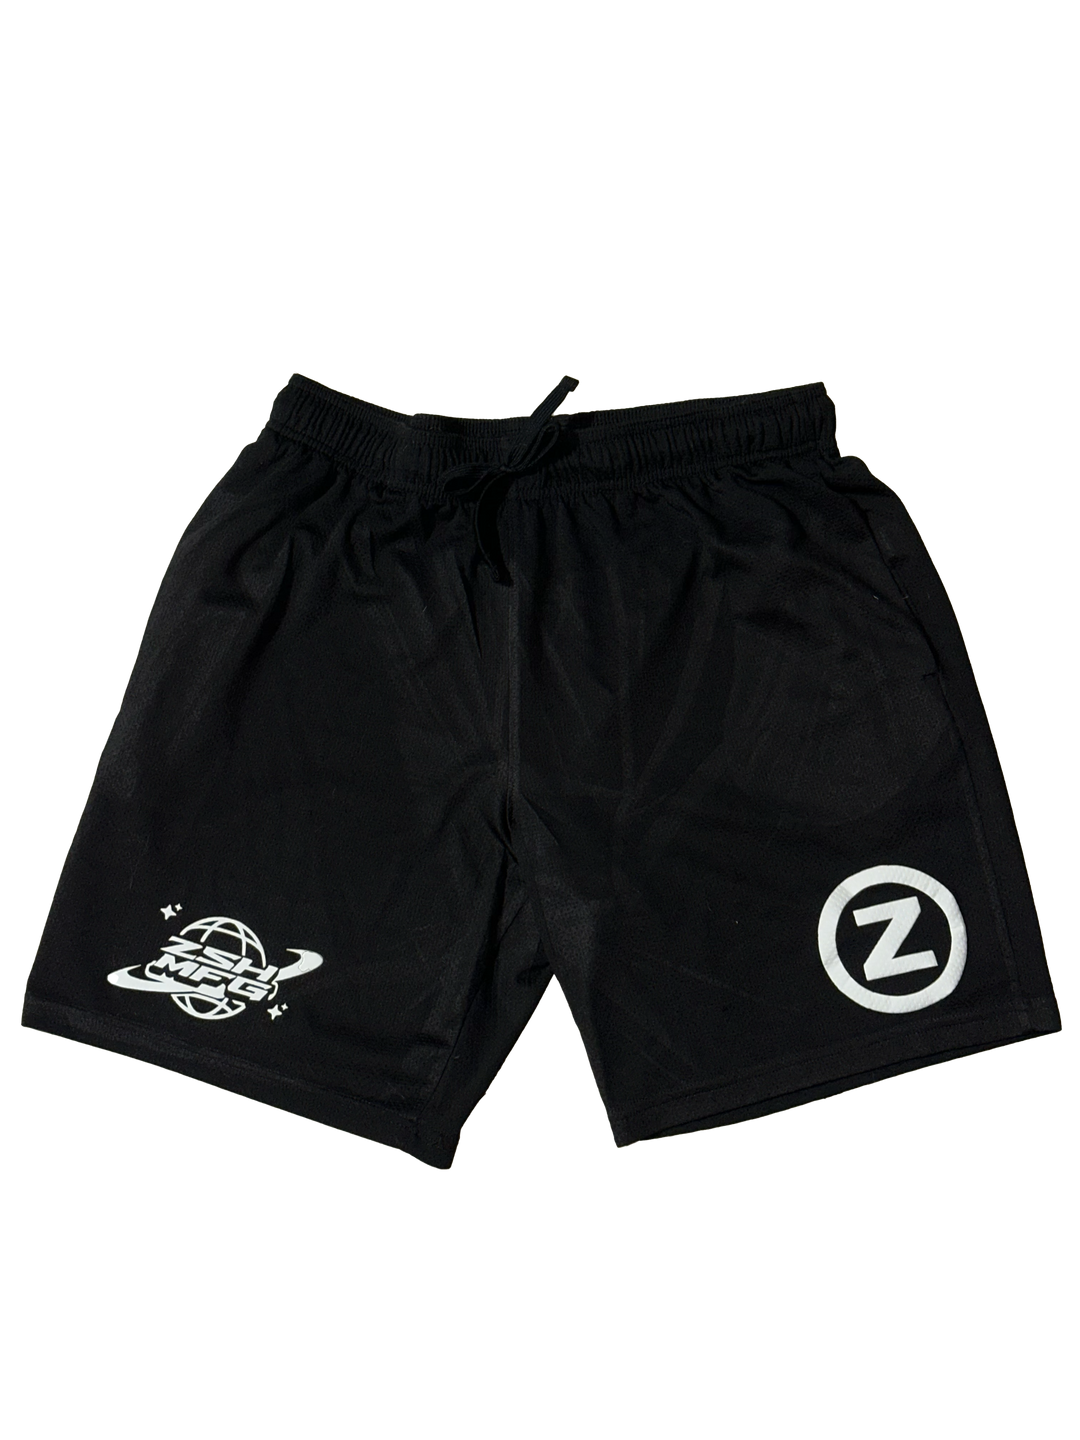 Zoshmfg Logo Mesh Shorts - Black - zoshmfg